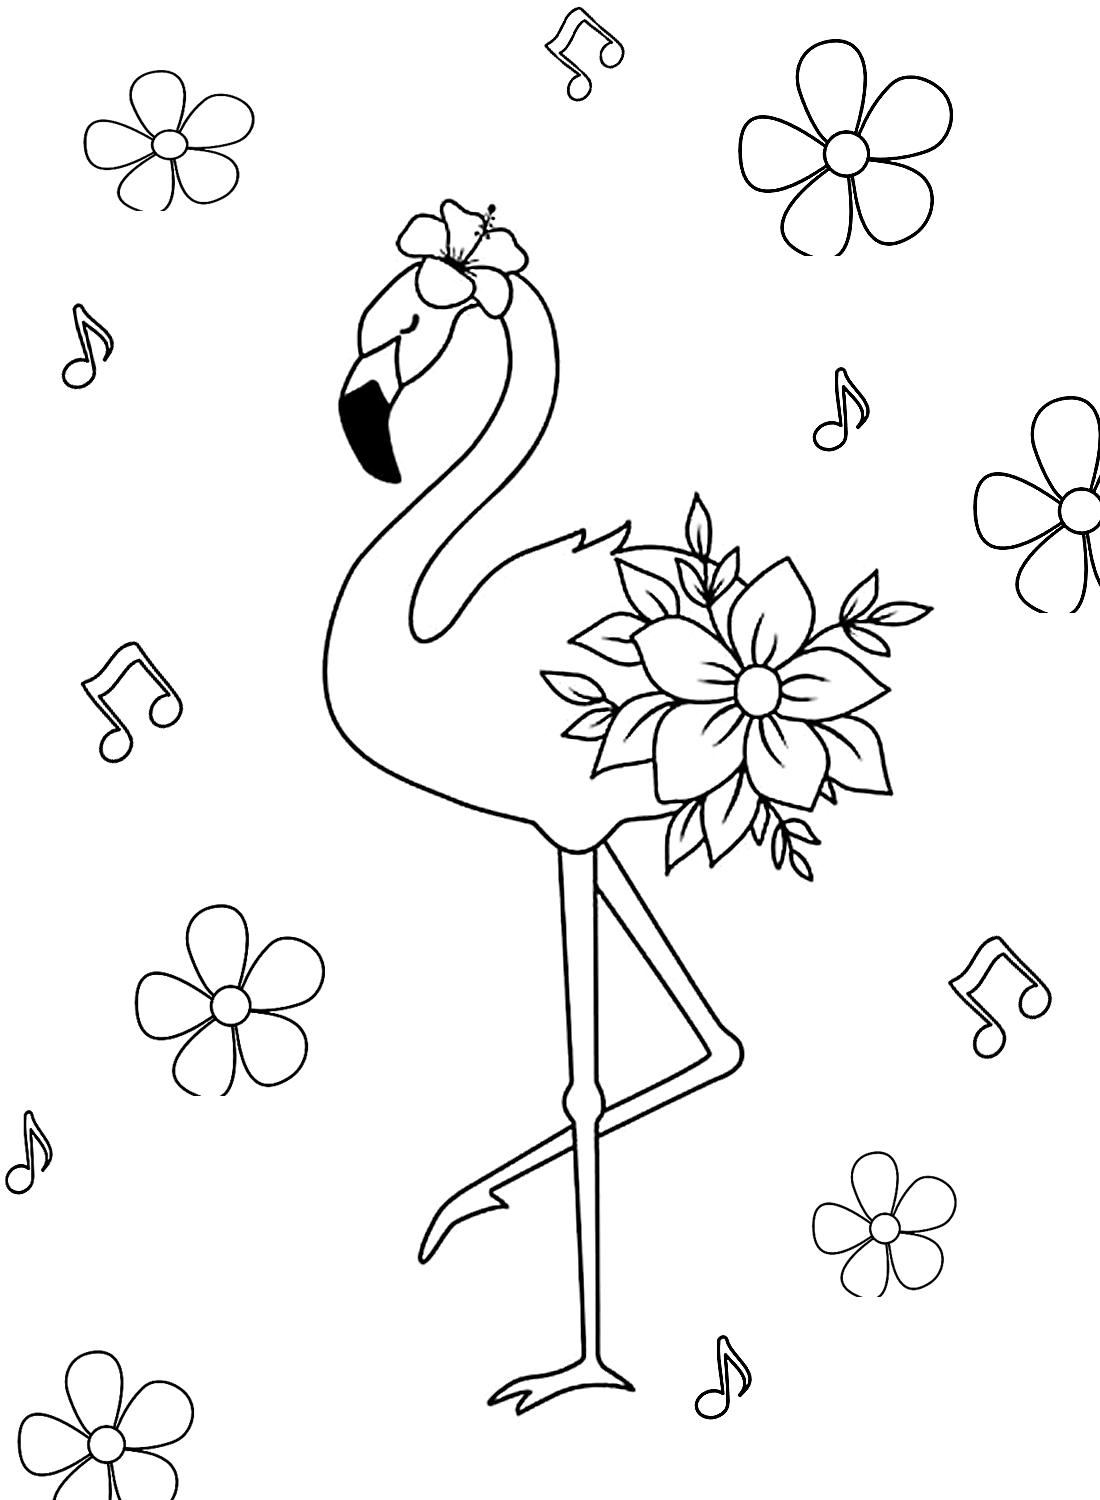 Foglio con fiori e fenicotteri di Flamingo